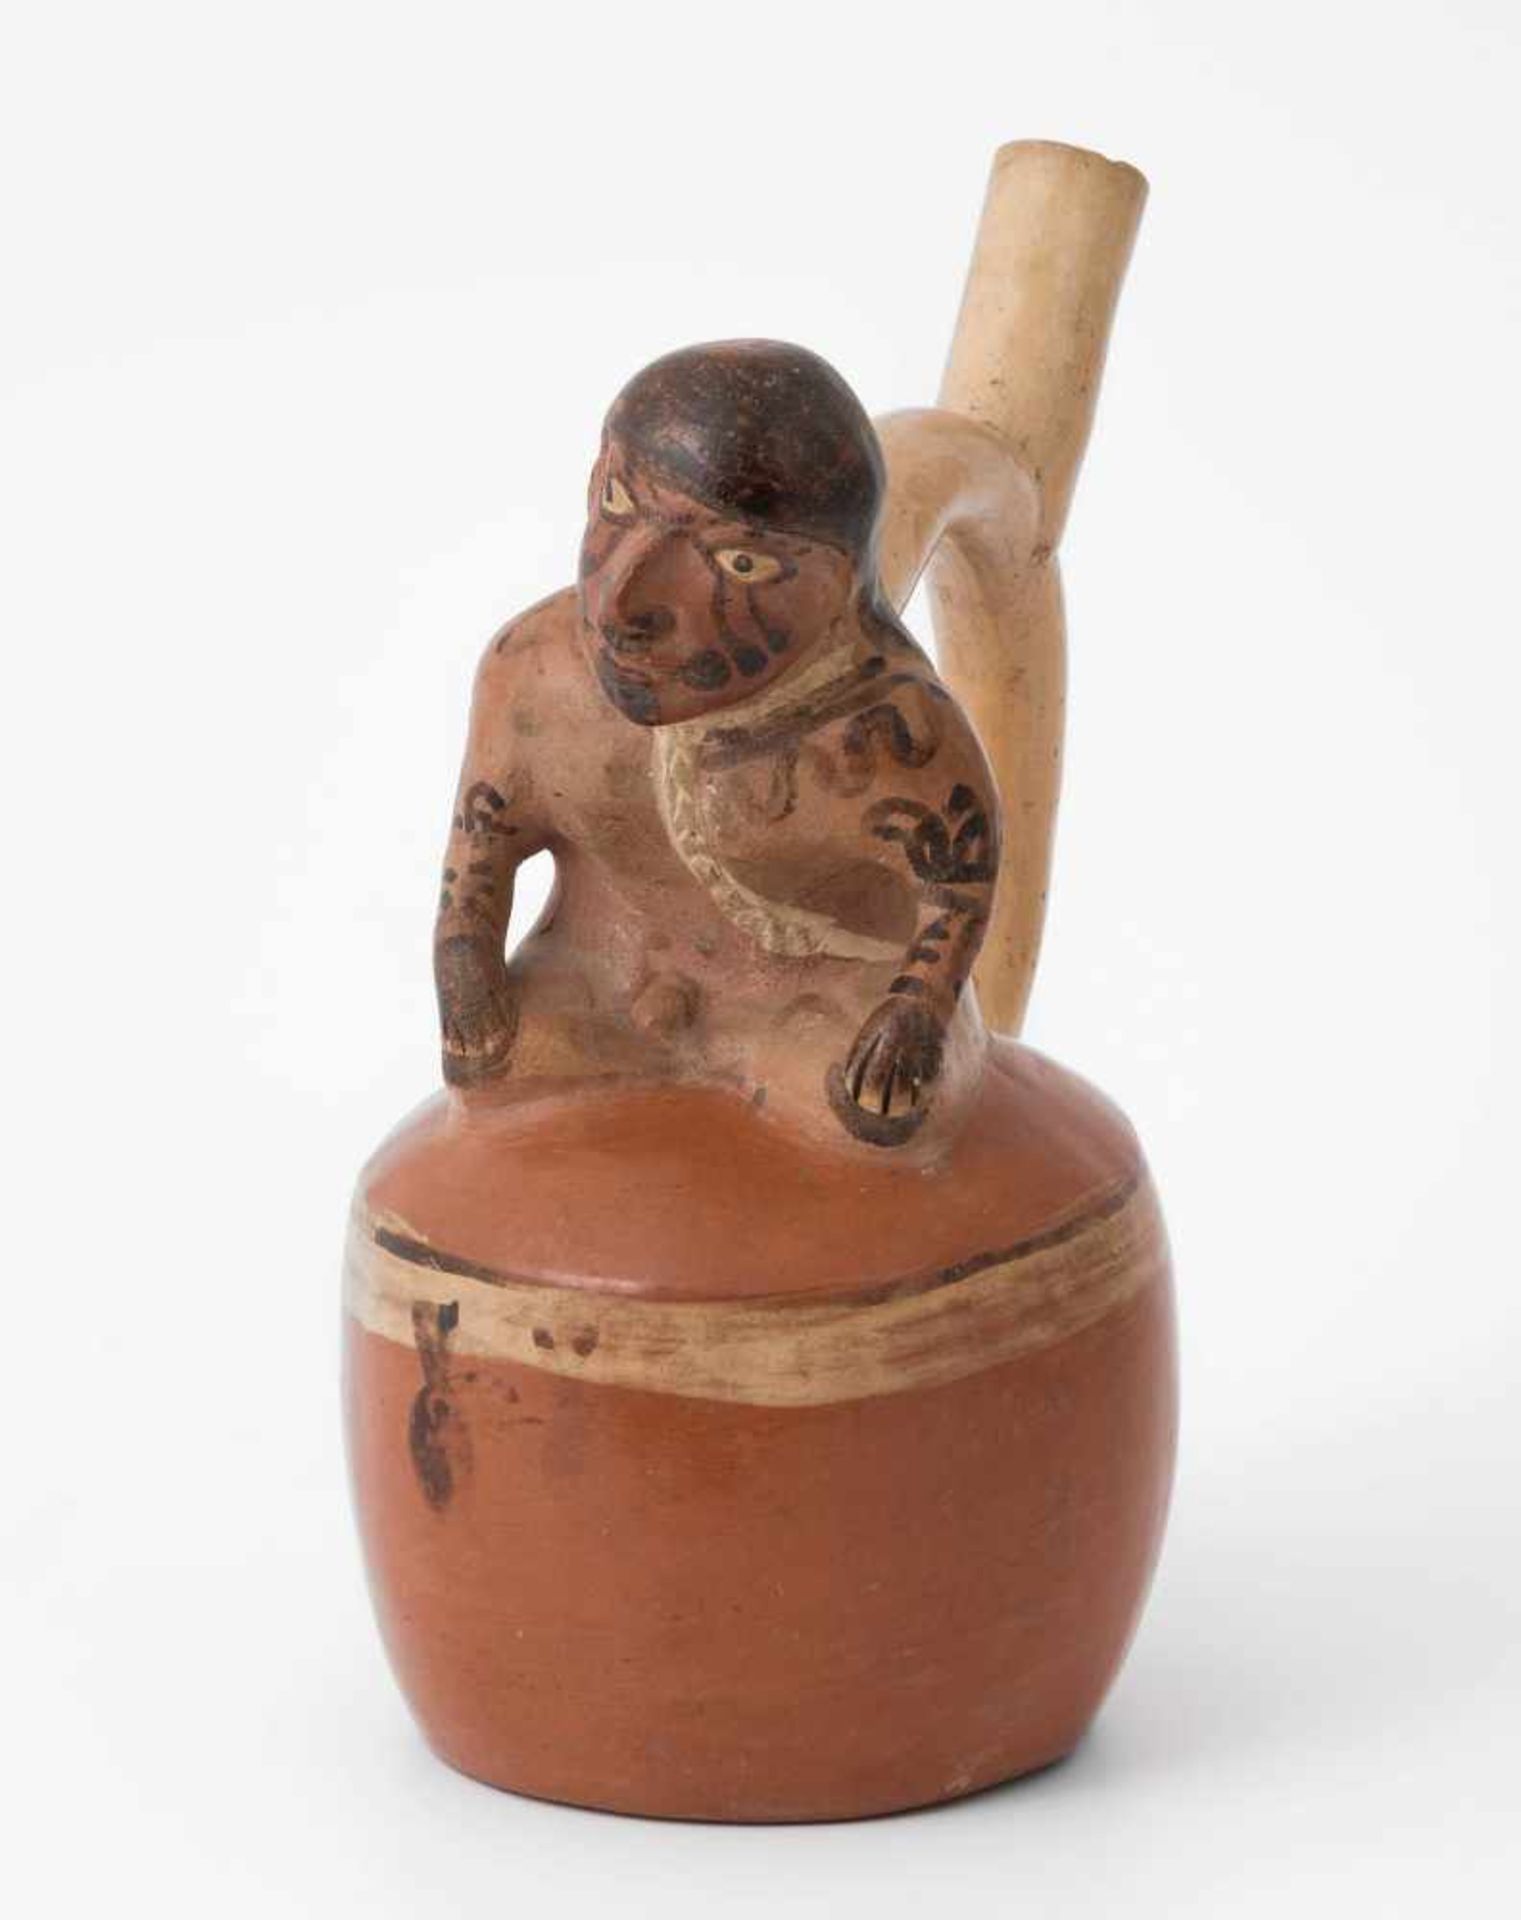 Steigbügelgefäss Peru, Moche, ca. 500–700 n.C. Rötlicher Ton, rotbraun und cremefarben bemalt.